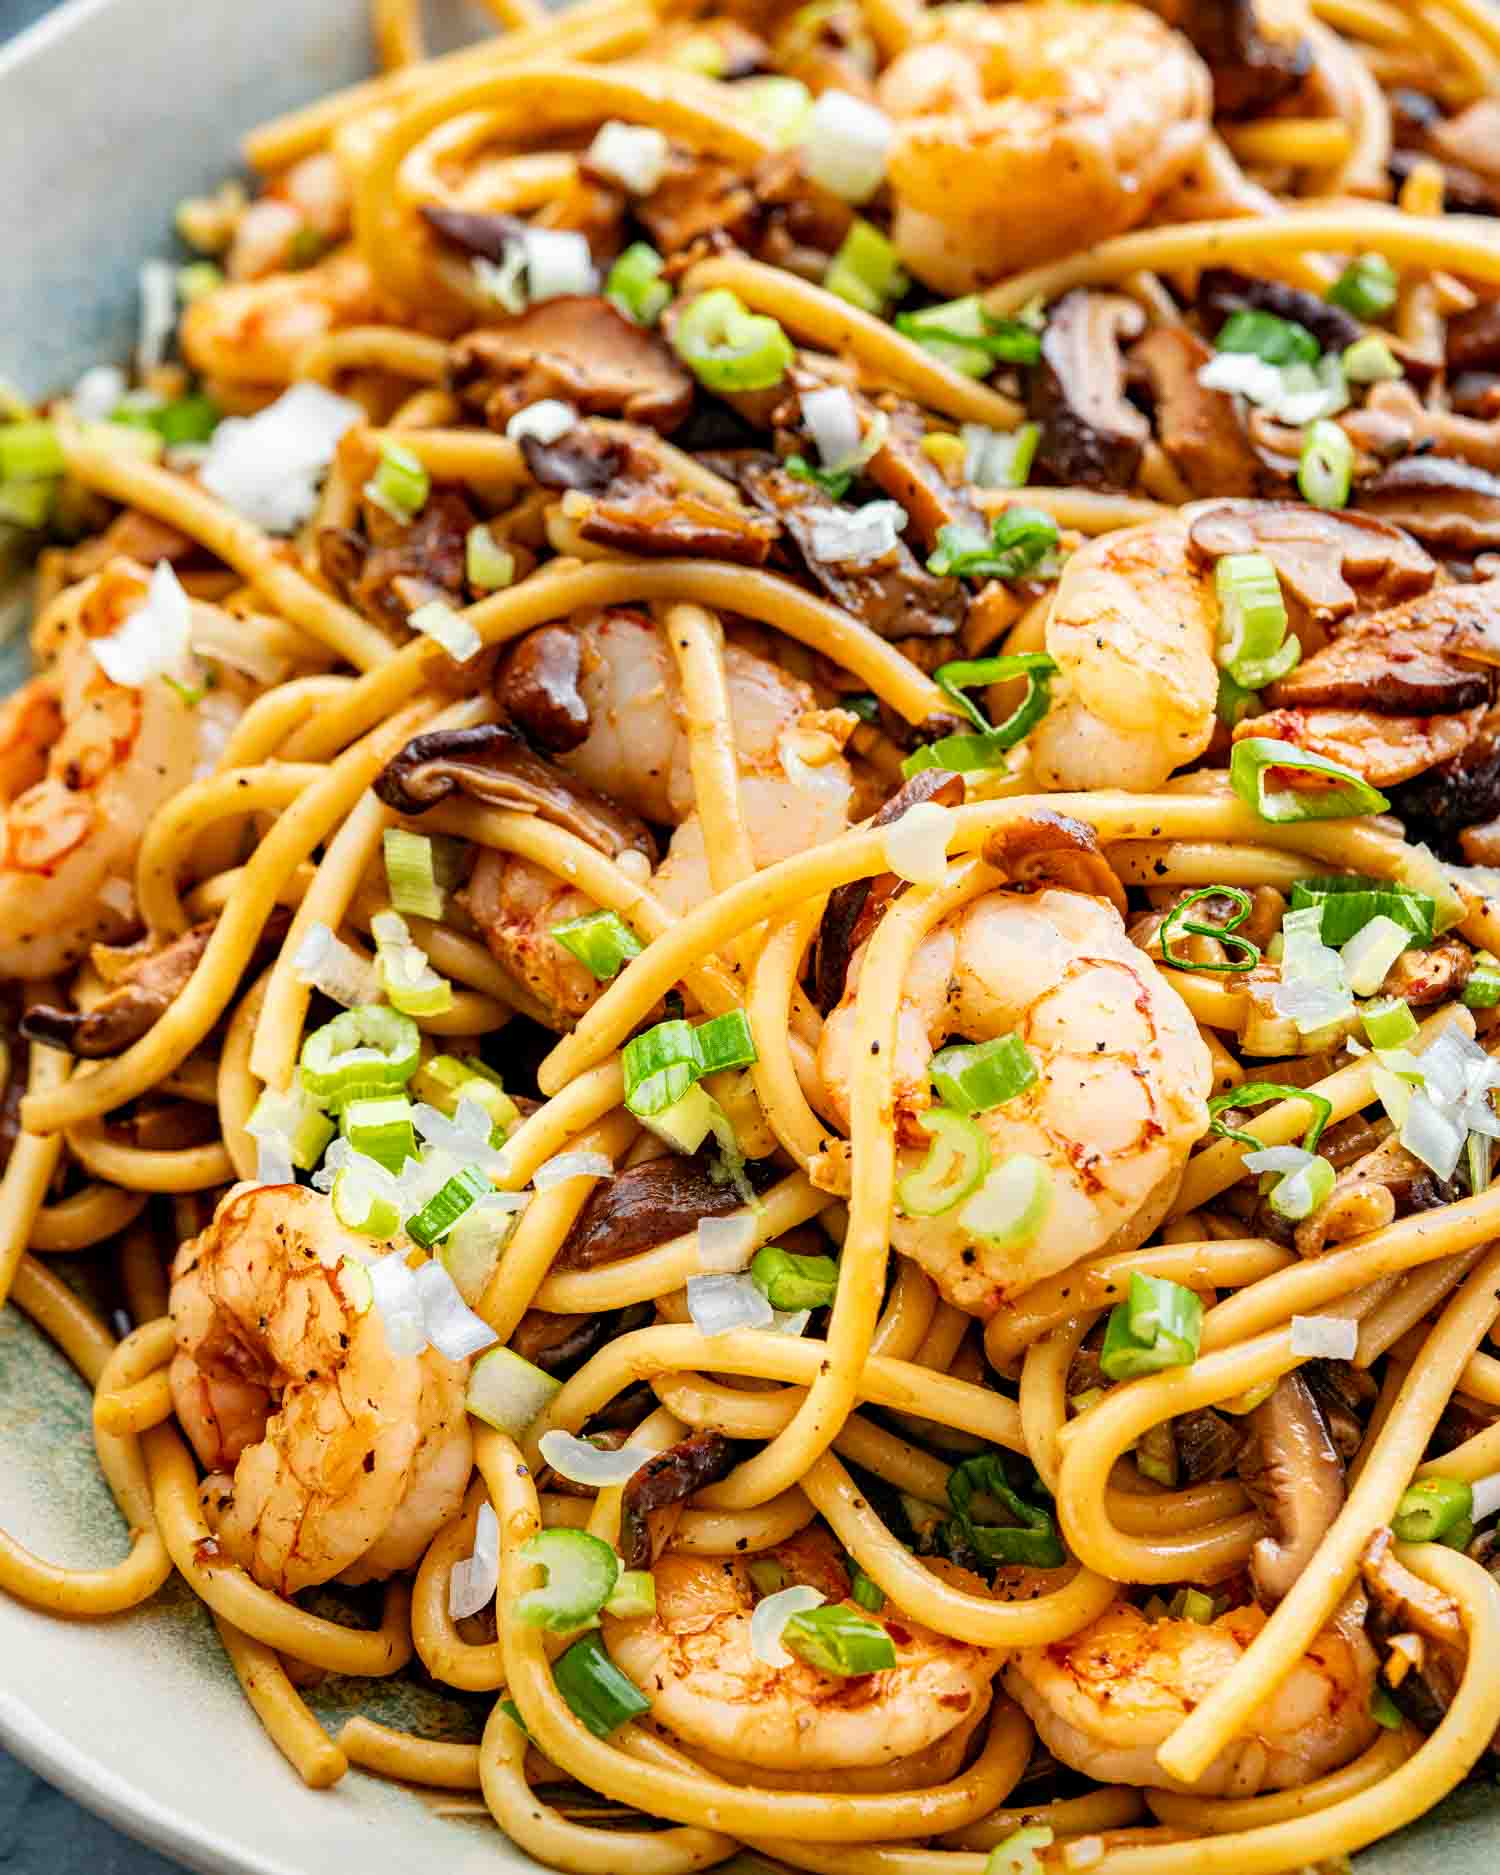 shrimp shiitake noodles in a serving platter.